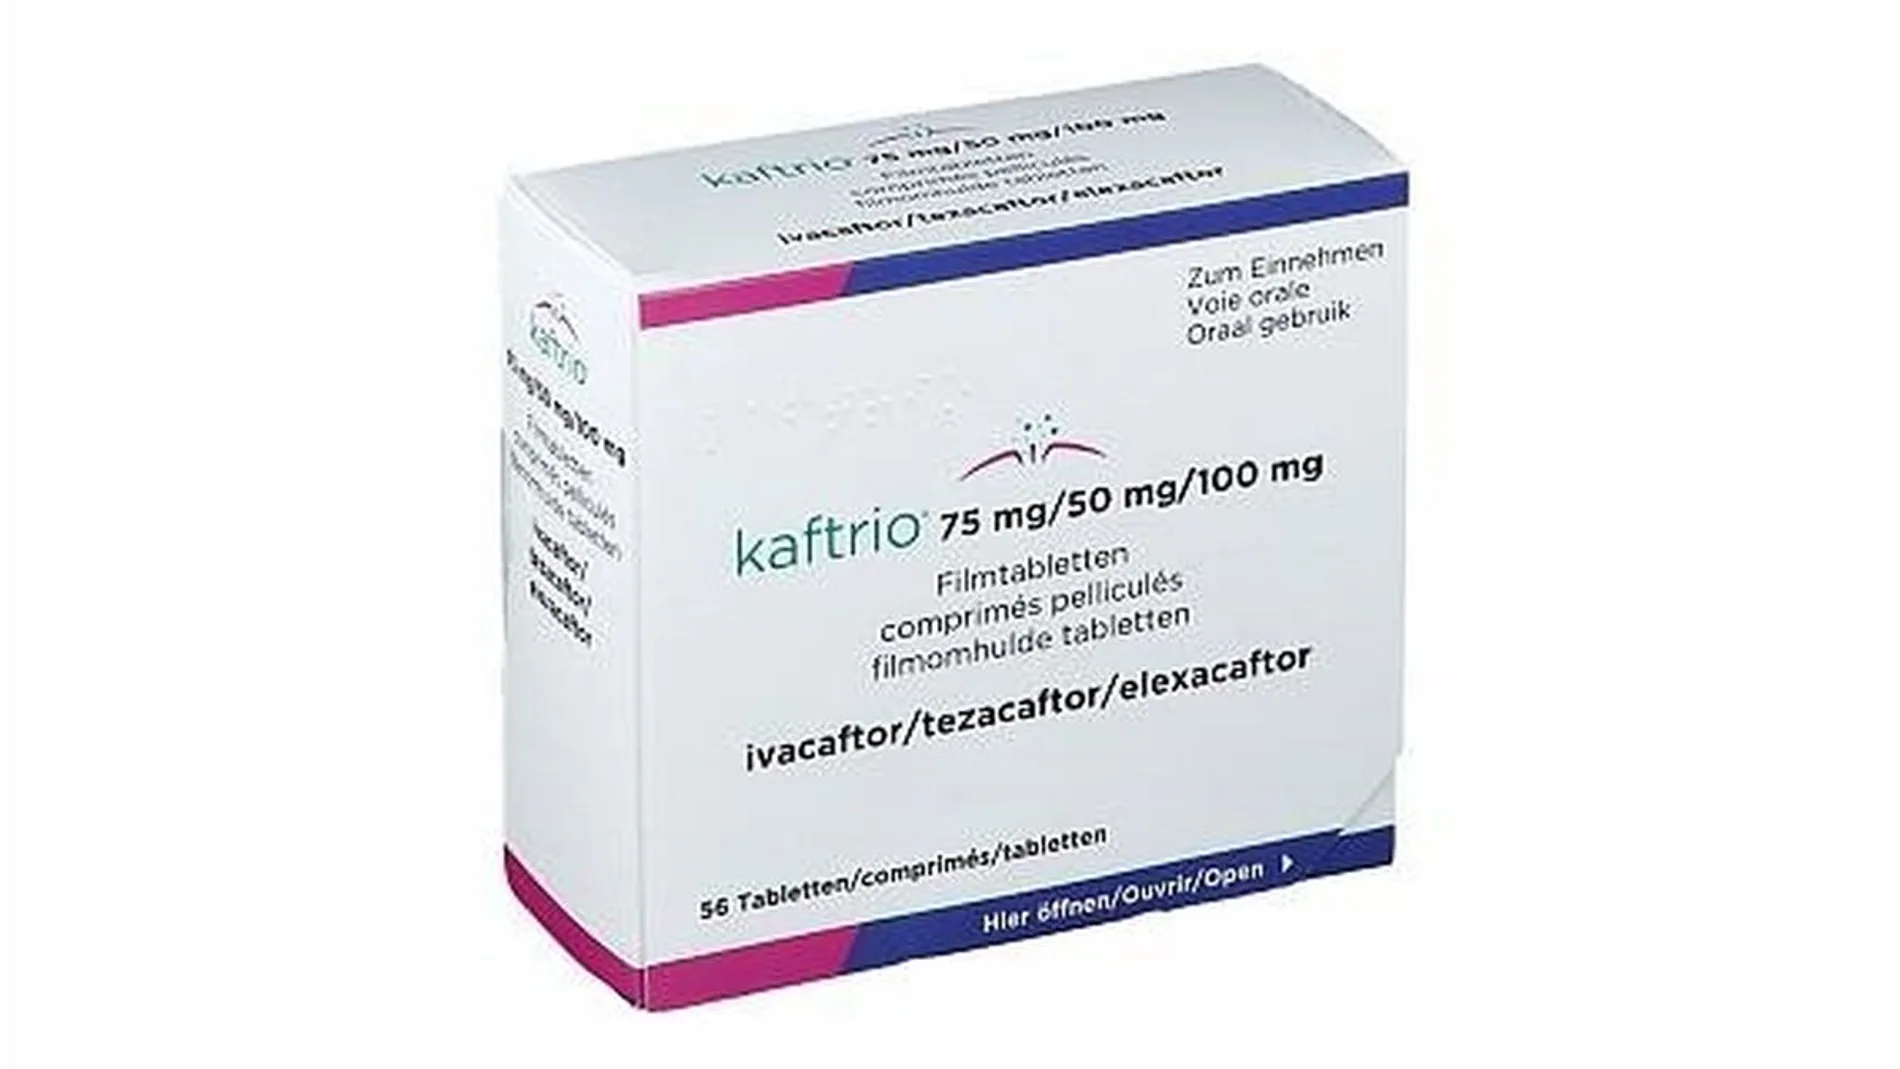 El medicamento Kaftrio